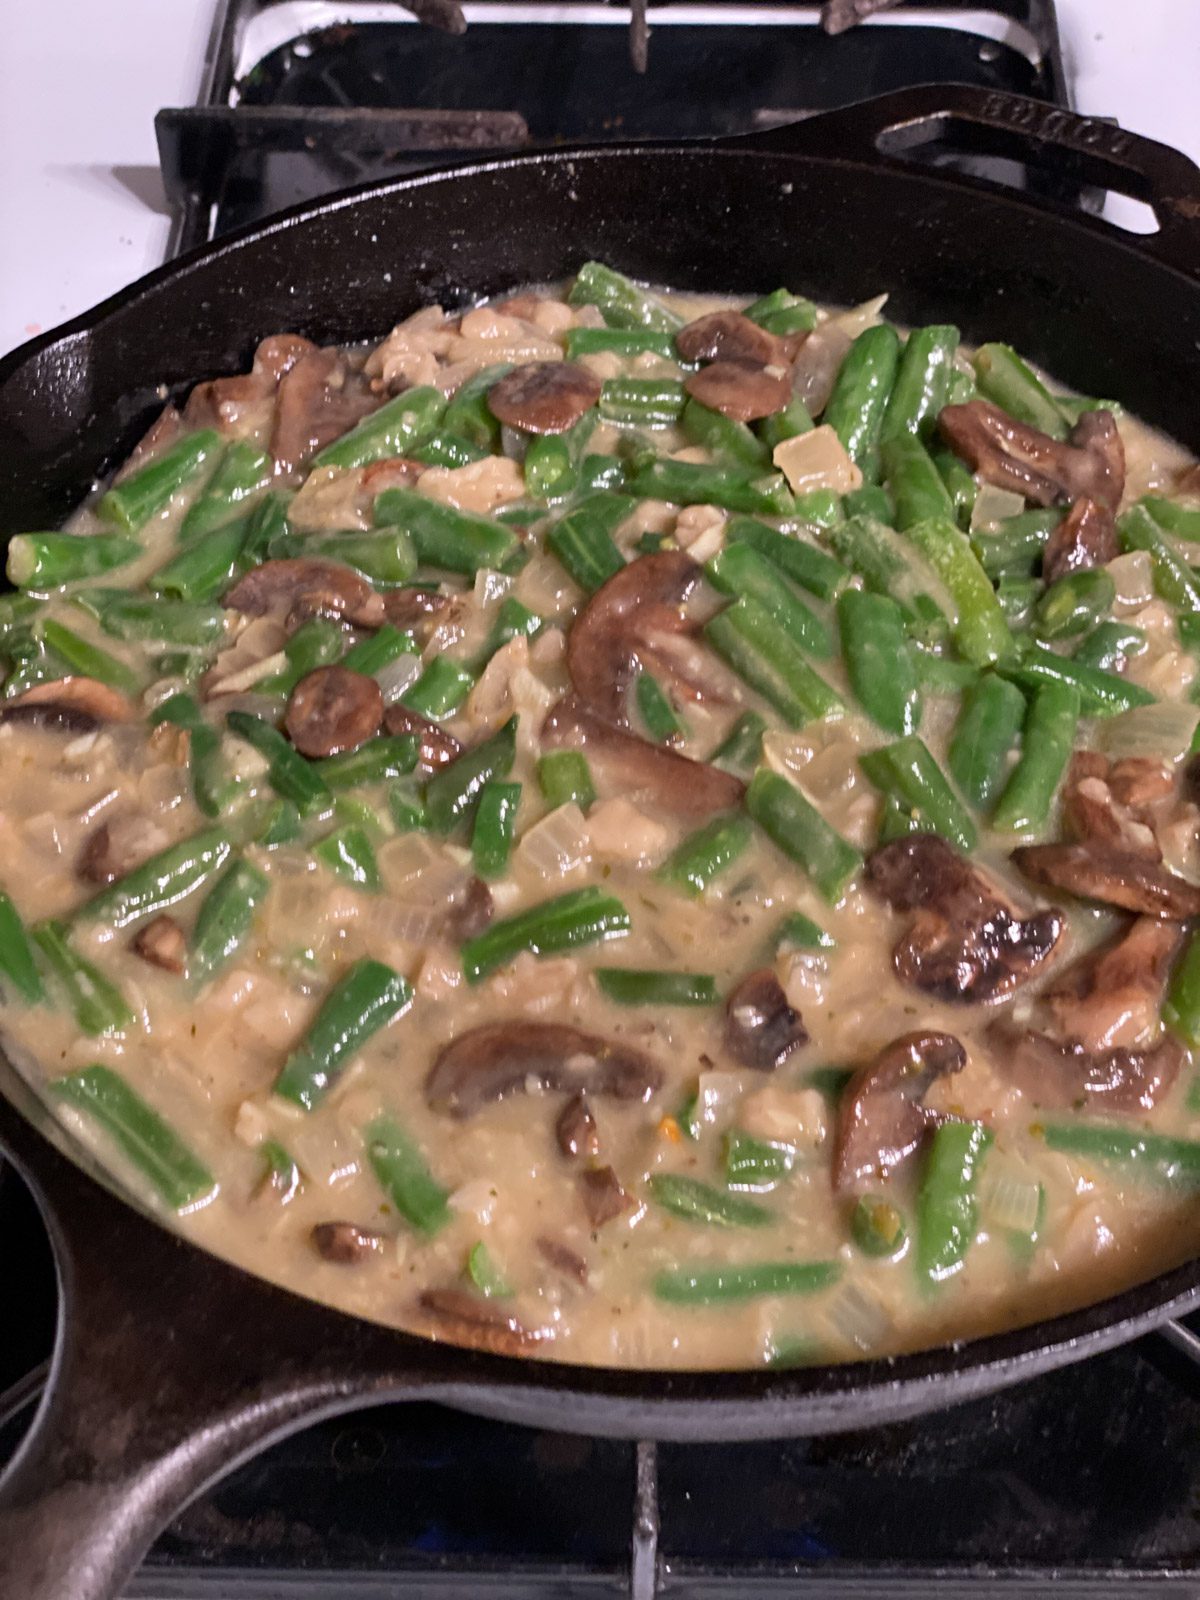 process shot of green bean casserole mixture cooking in a pan